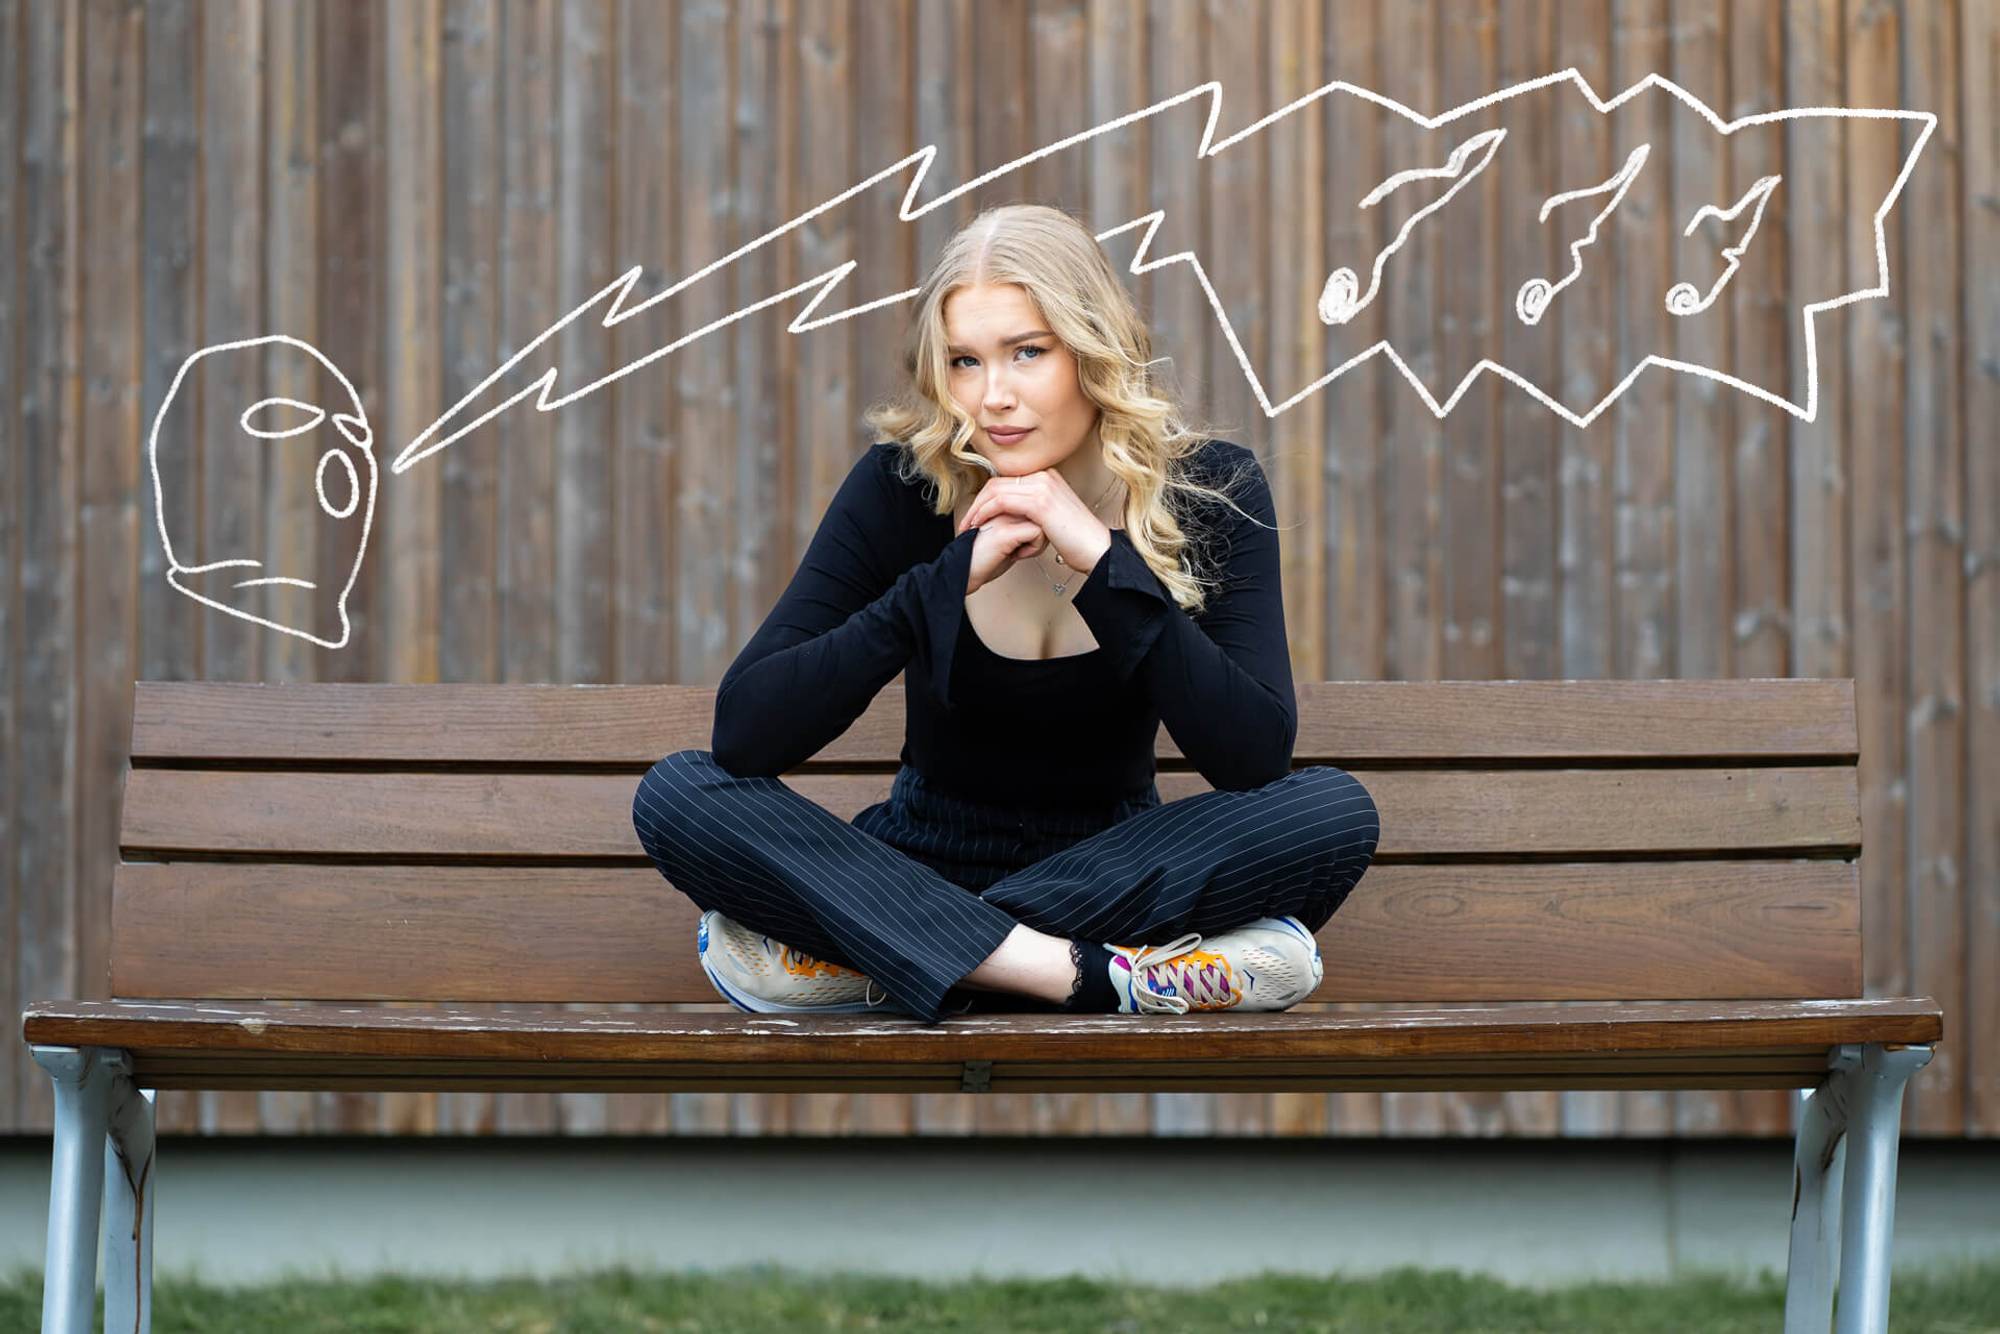 Ingeborg Grønnesby (20) sitter med beina i kors på en benk. Hun støtter hodet med samlede hender og et lurt blikk. Over henne er artisten Ballinciaga illustrert med en snakkeboble som indikerer på at det synges surt. 